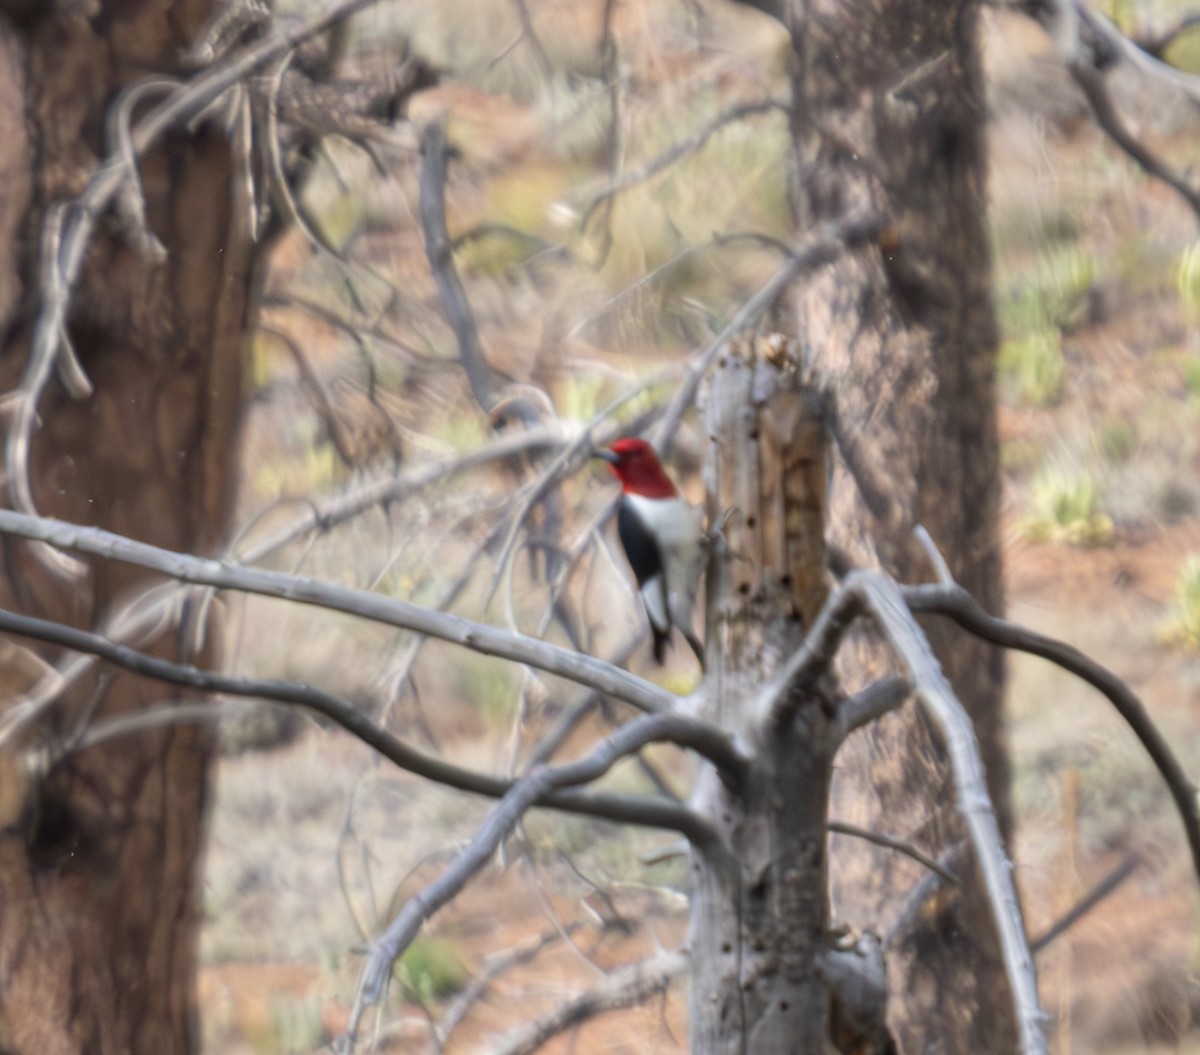 Red-headed Woodpecker - Mike Clark